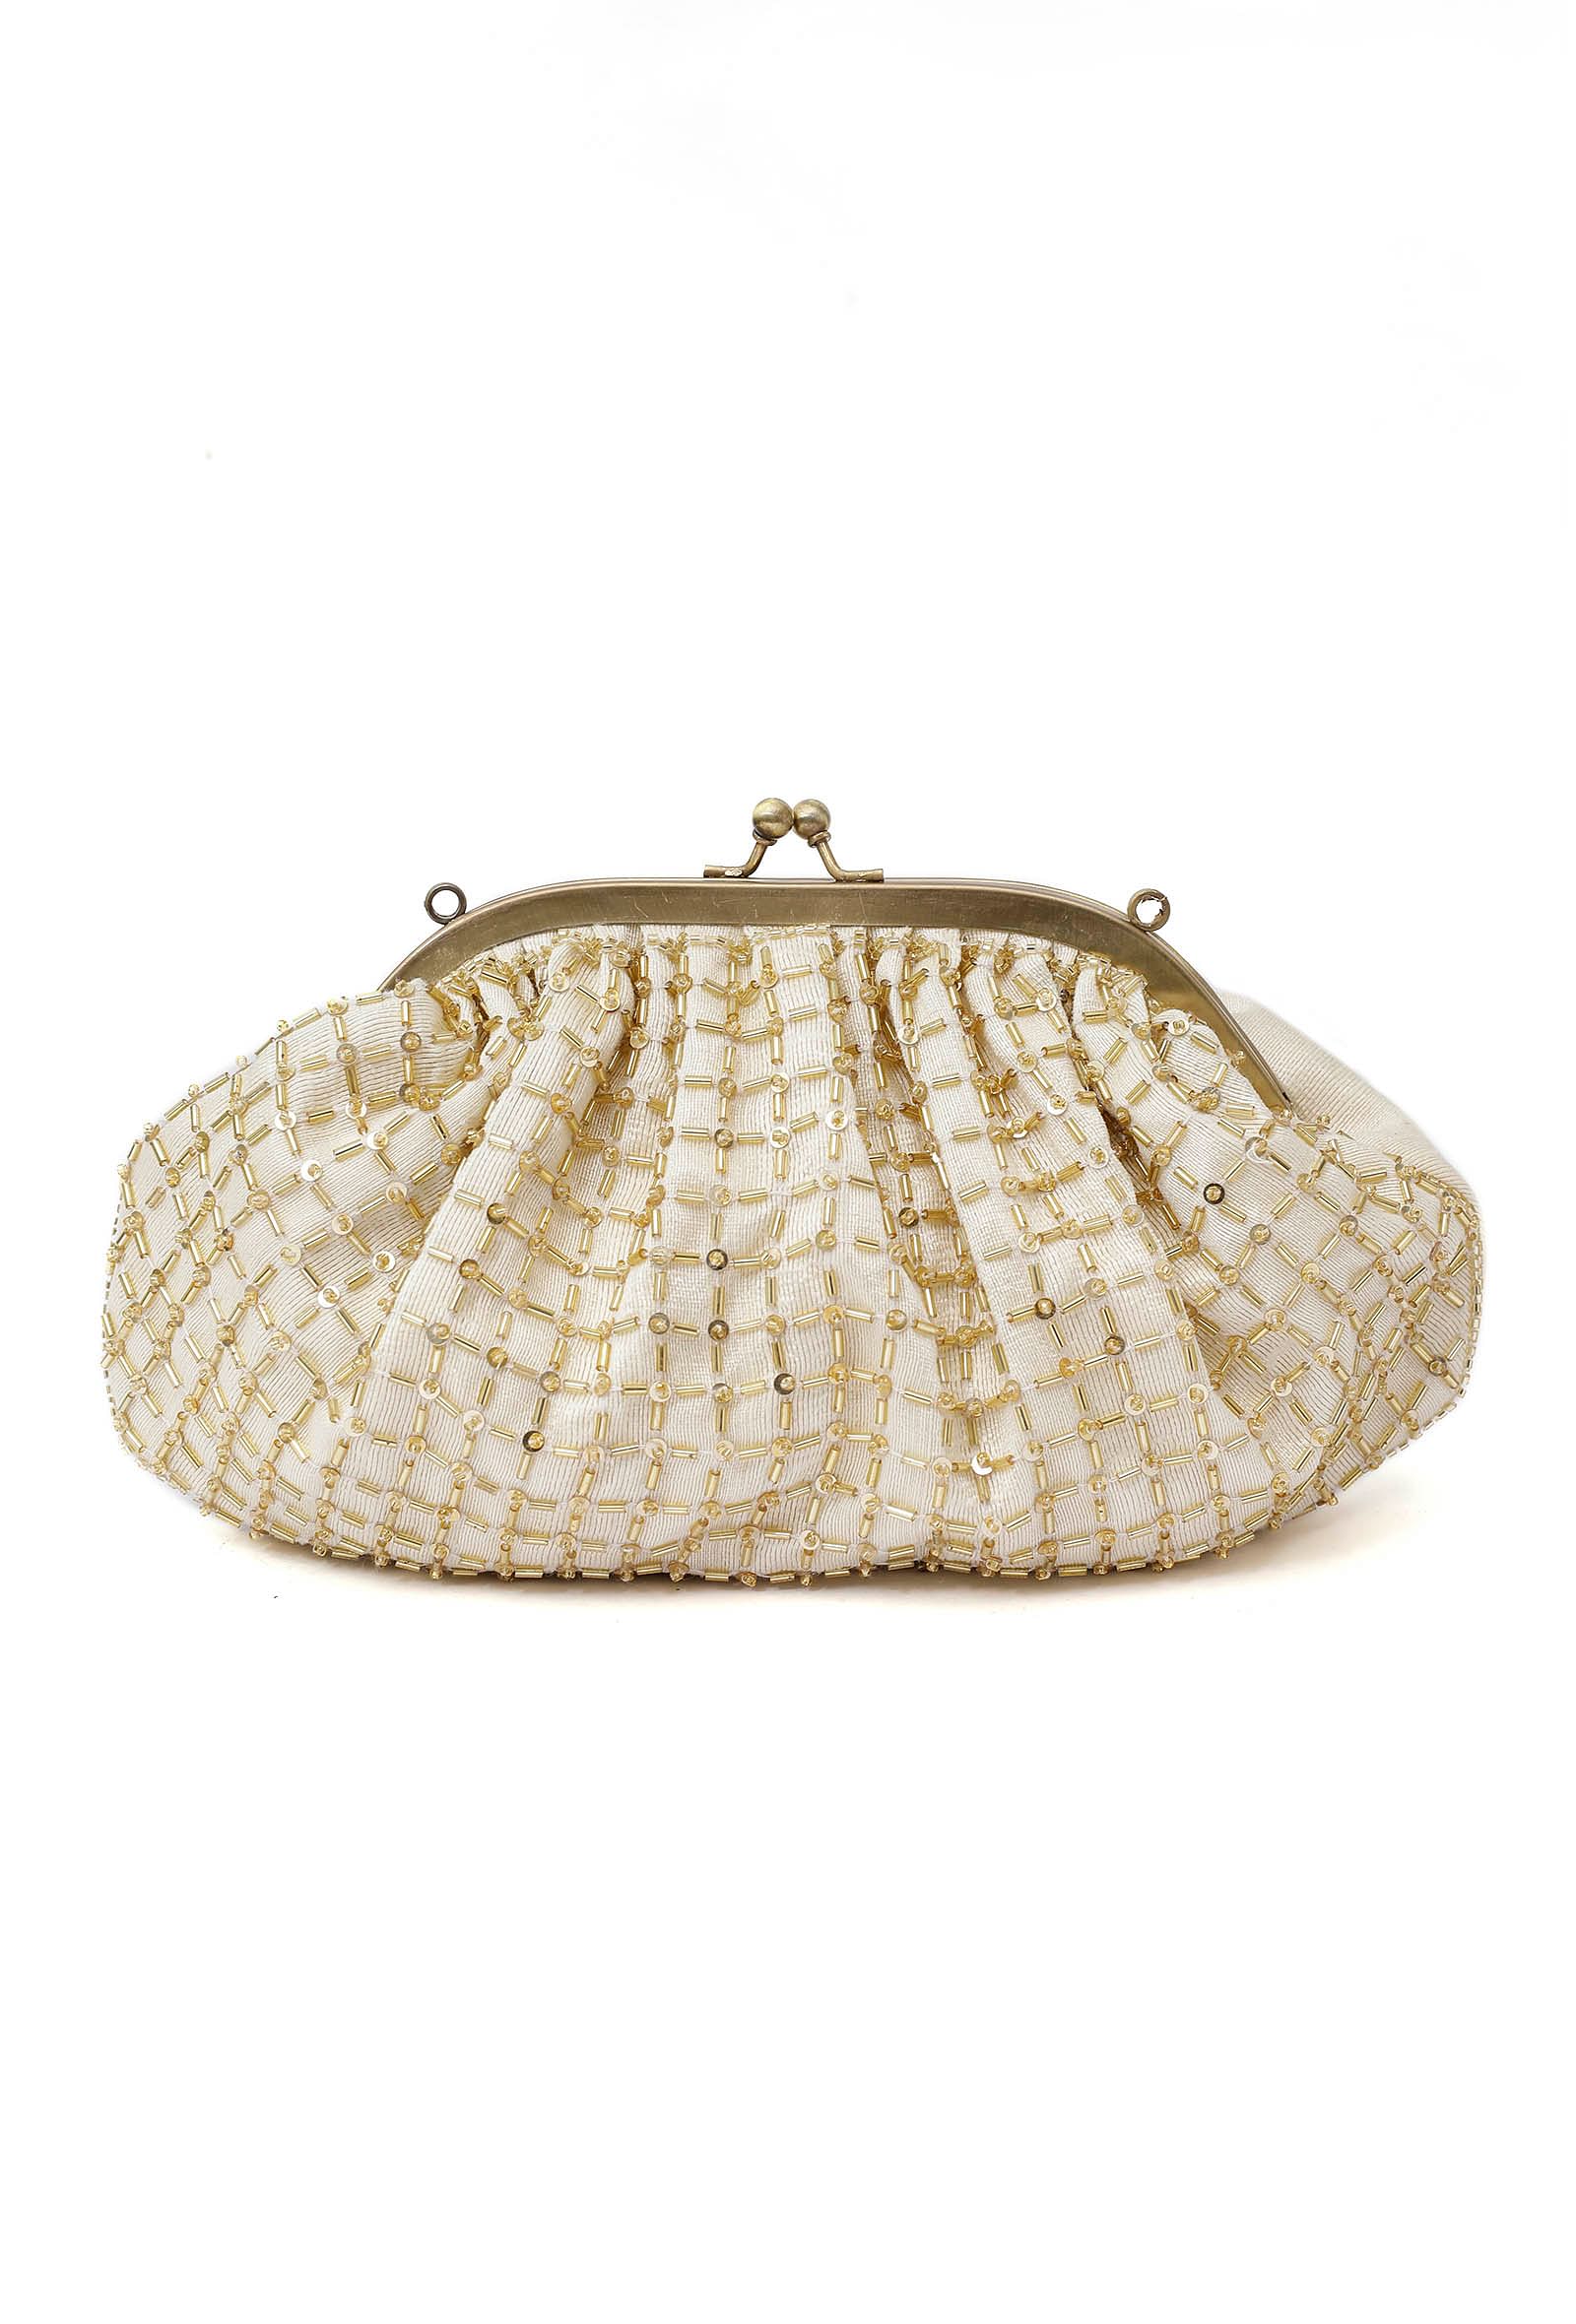 Kiya White-Golden Embellished Clutch Bag